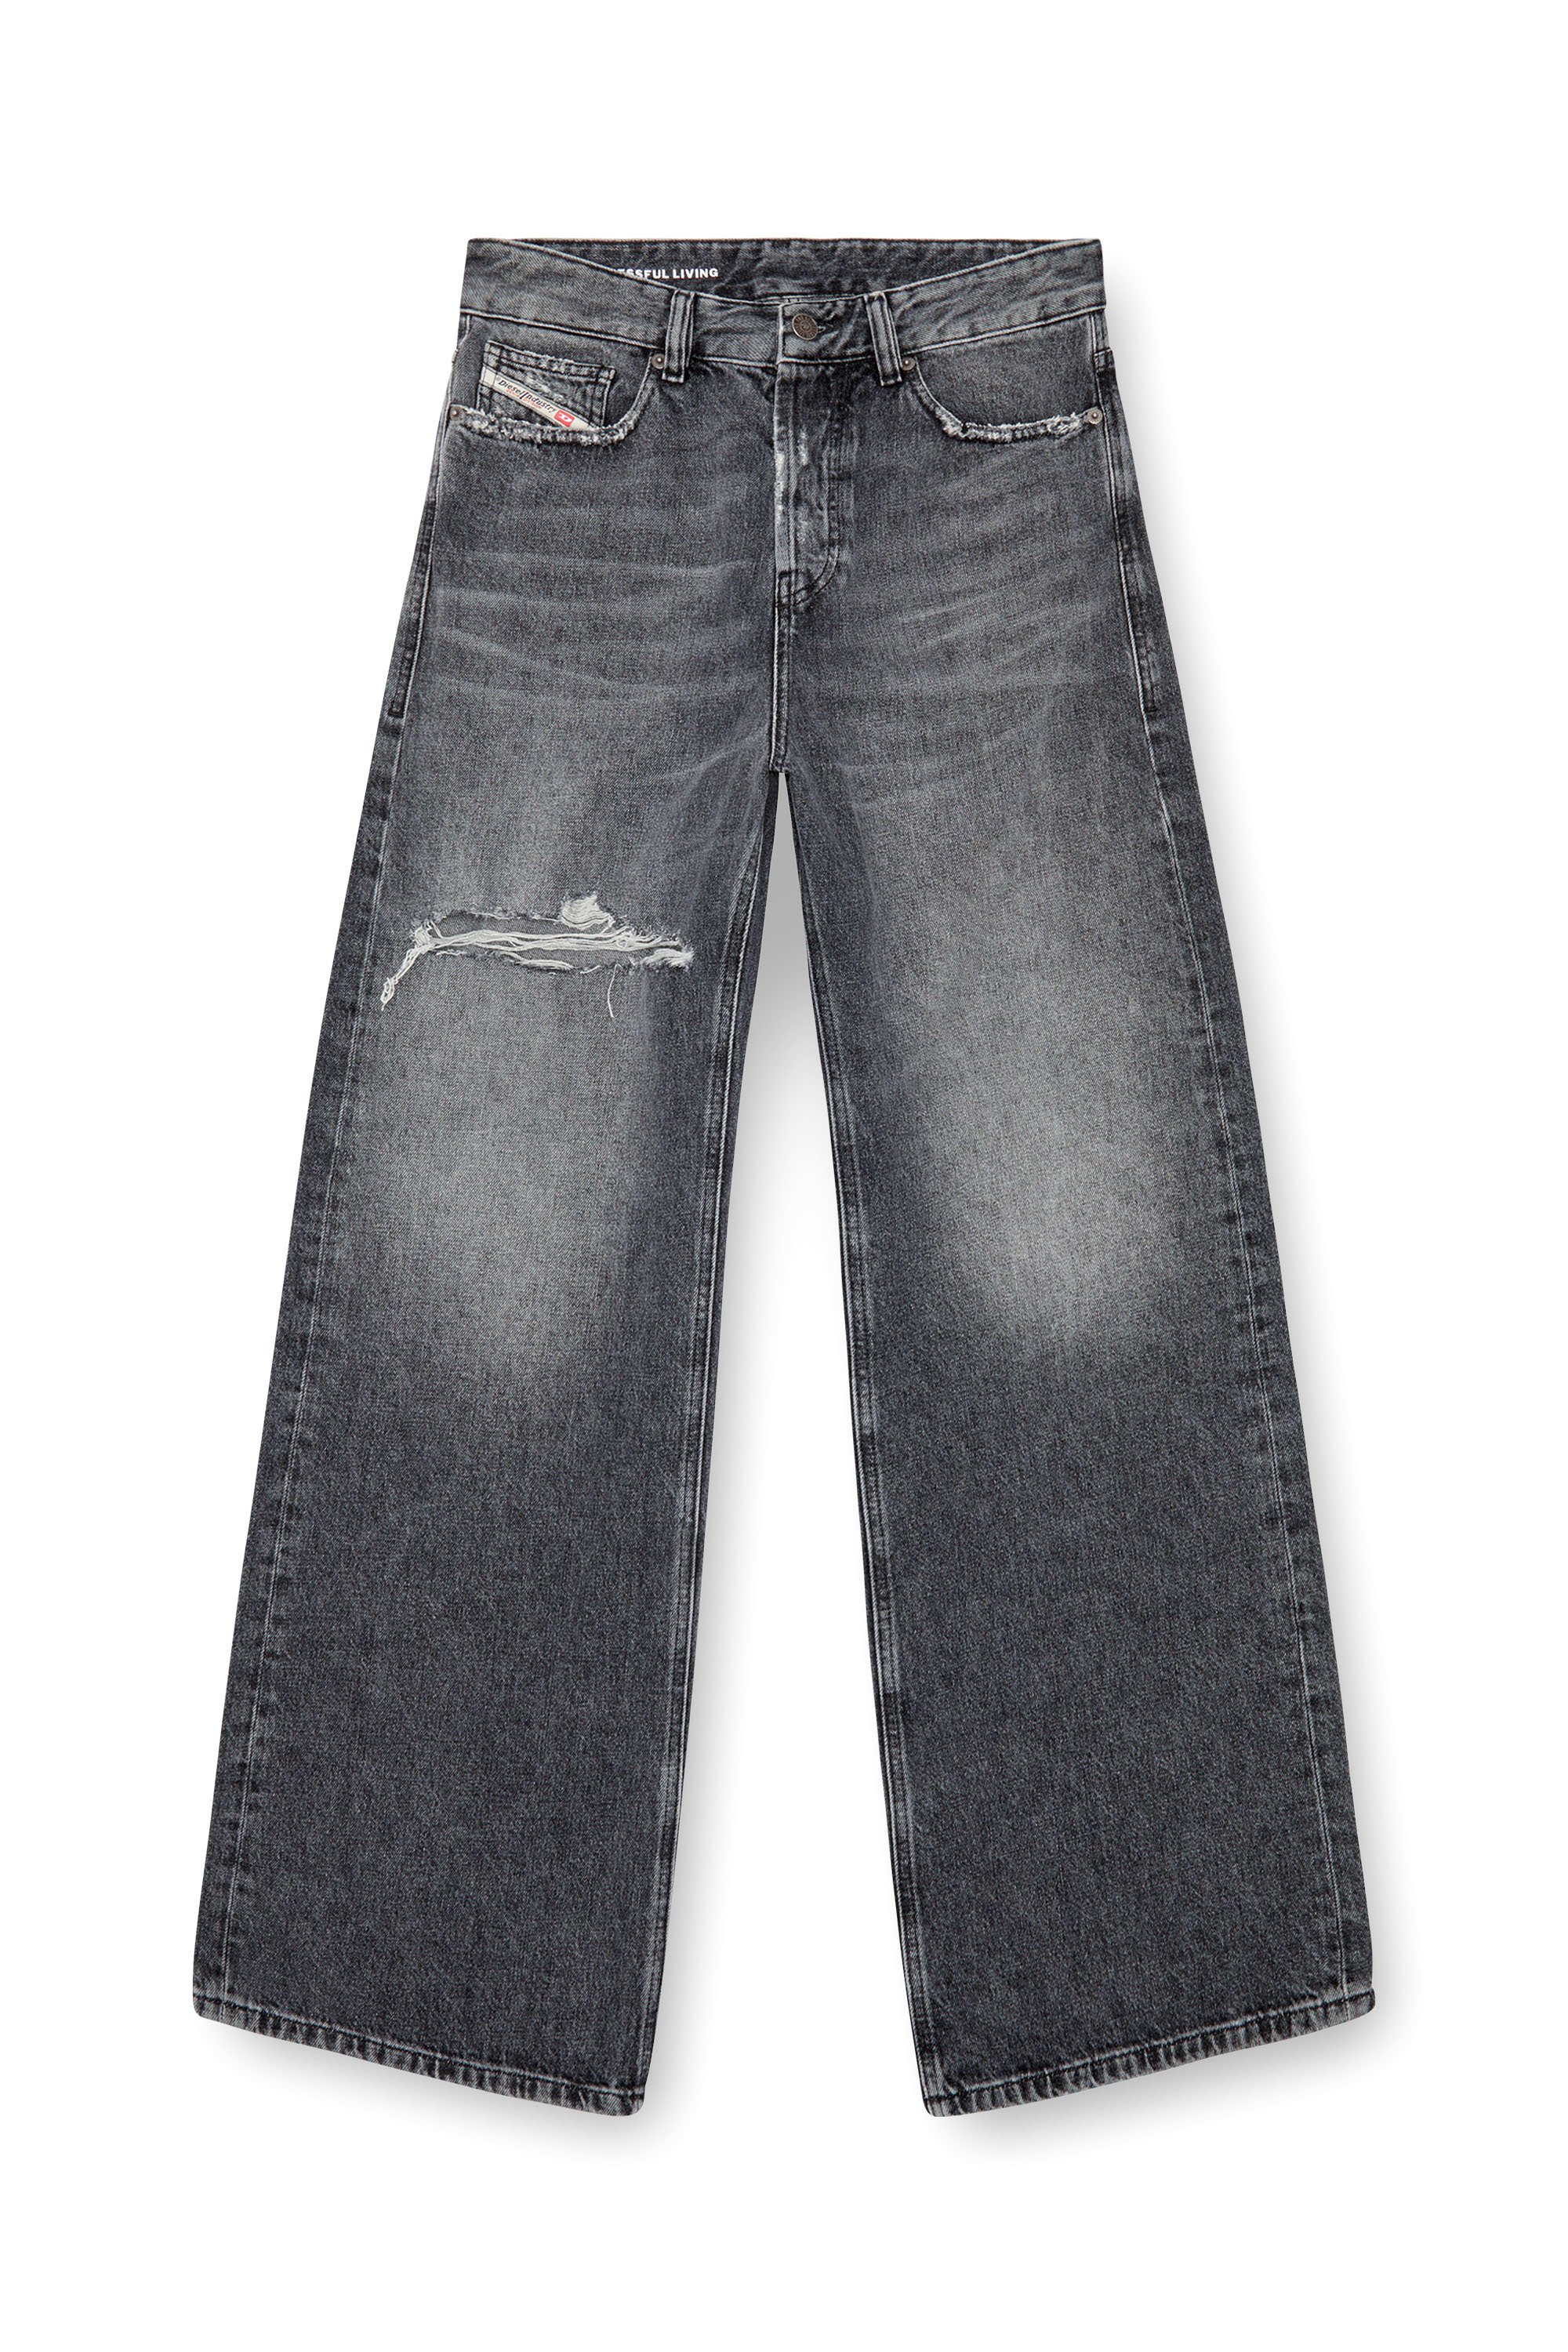 Diesel - Femme Straight Jeans 1996 D-Sire 007X4, Noir/Gris foncé - Image 6